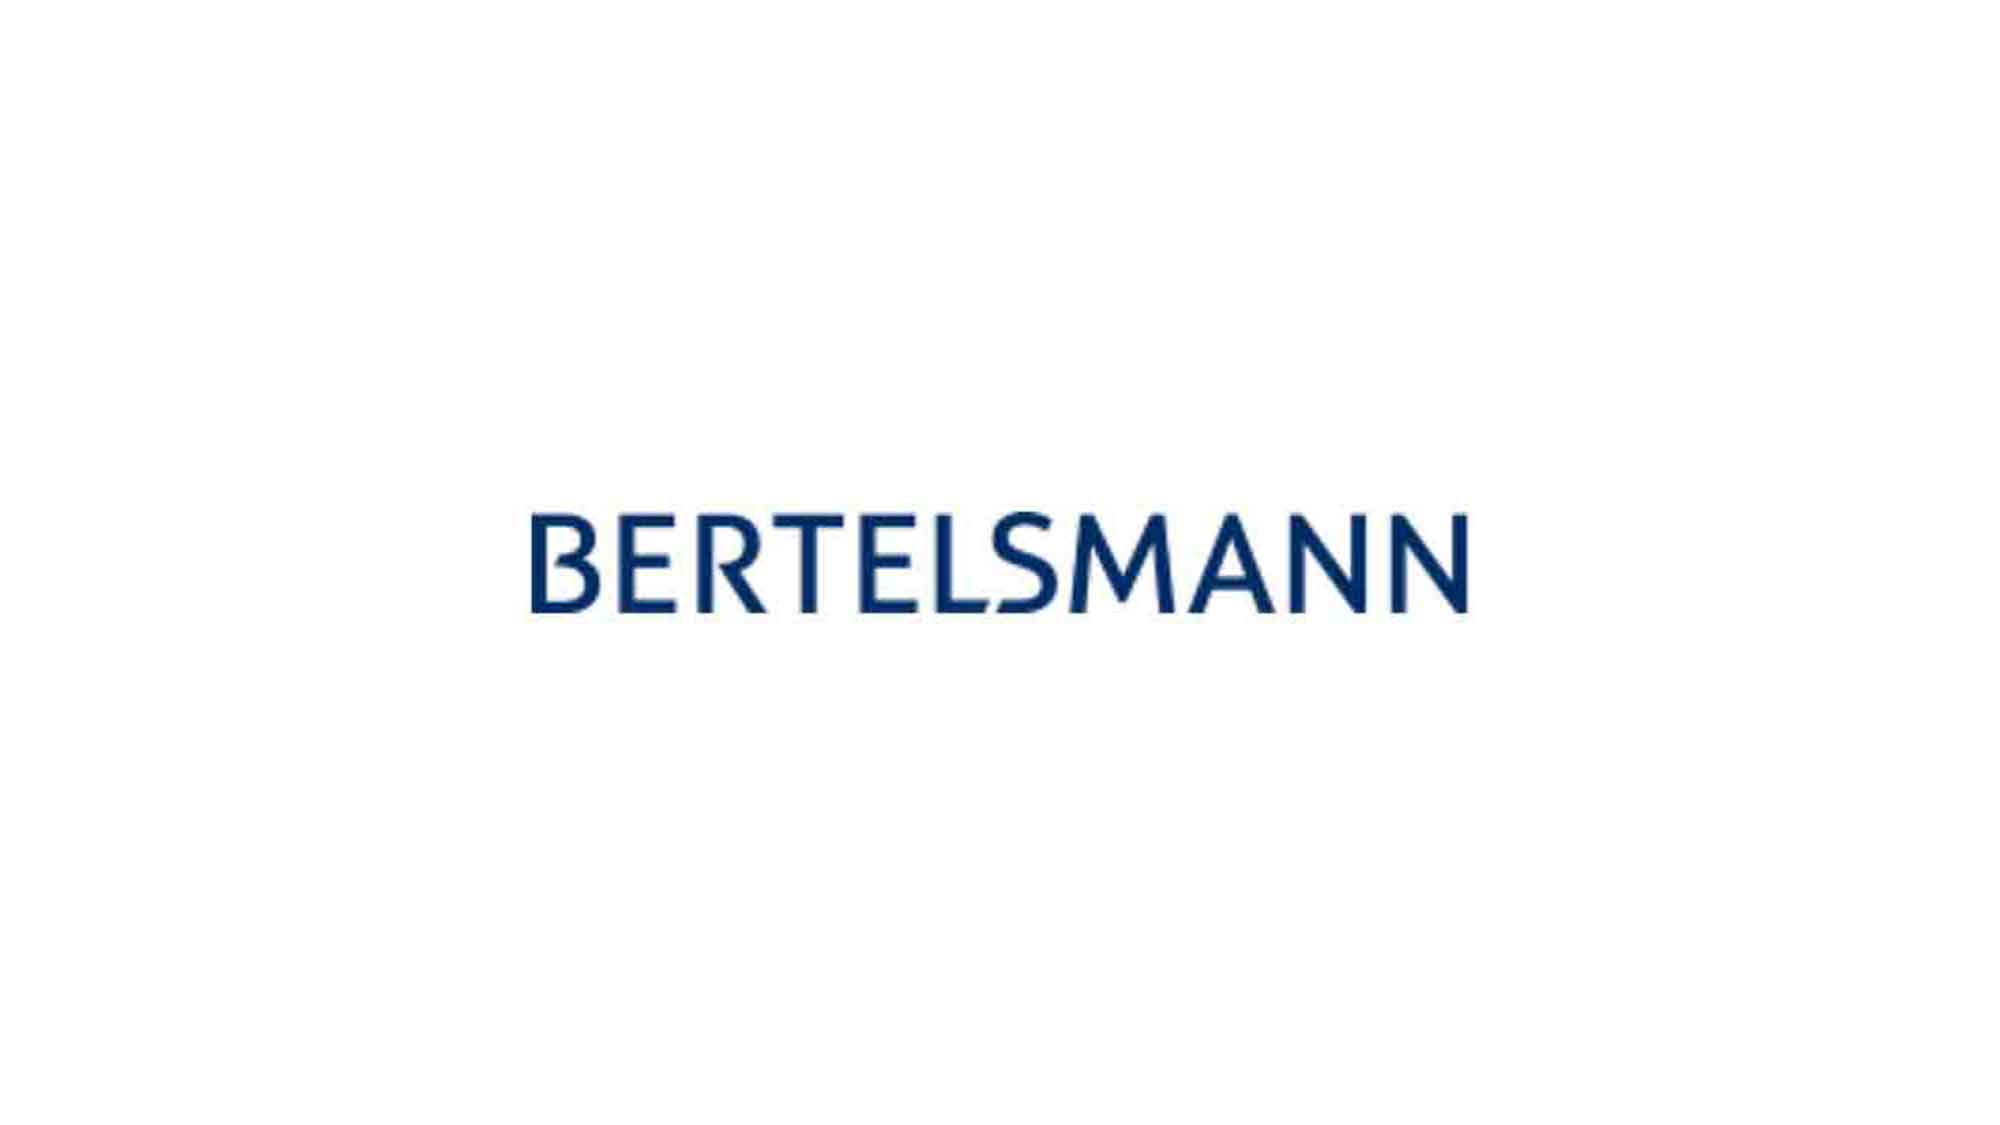 Bertelsmann steigert Investitionen am Standort Gütersloh auf 70 Millionen Euro im Jahr 2023